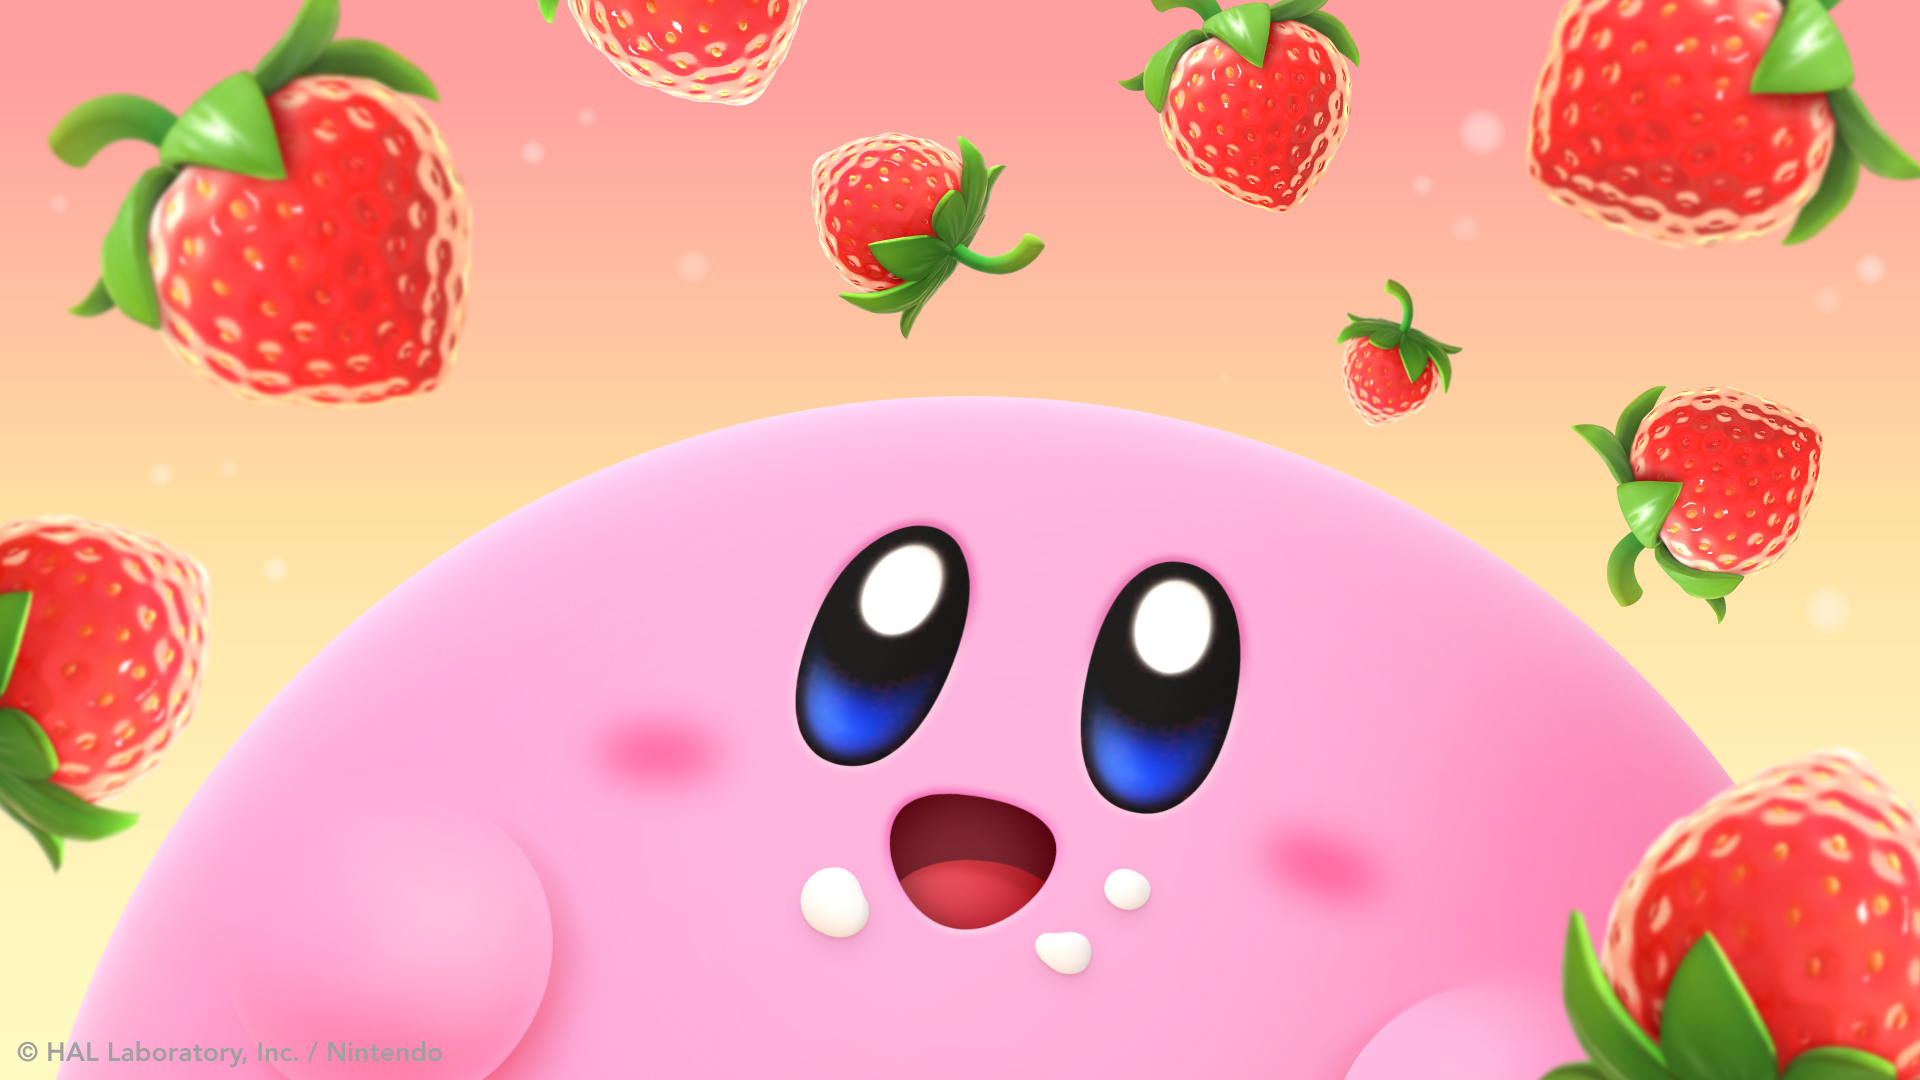 Hình nền HD Kirby\'s Dream Buffet mang đến cho bạn một không gian đầy màu sắc và đáng yêu với các nhân vật trong thế giới Kirby. Sử dụng hình ảnh này để tạo không gian làm việc vui tươi hơn.